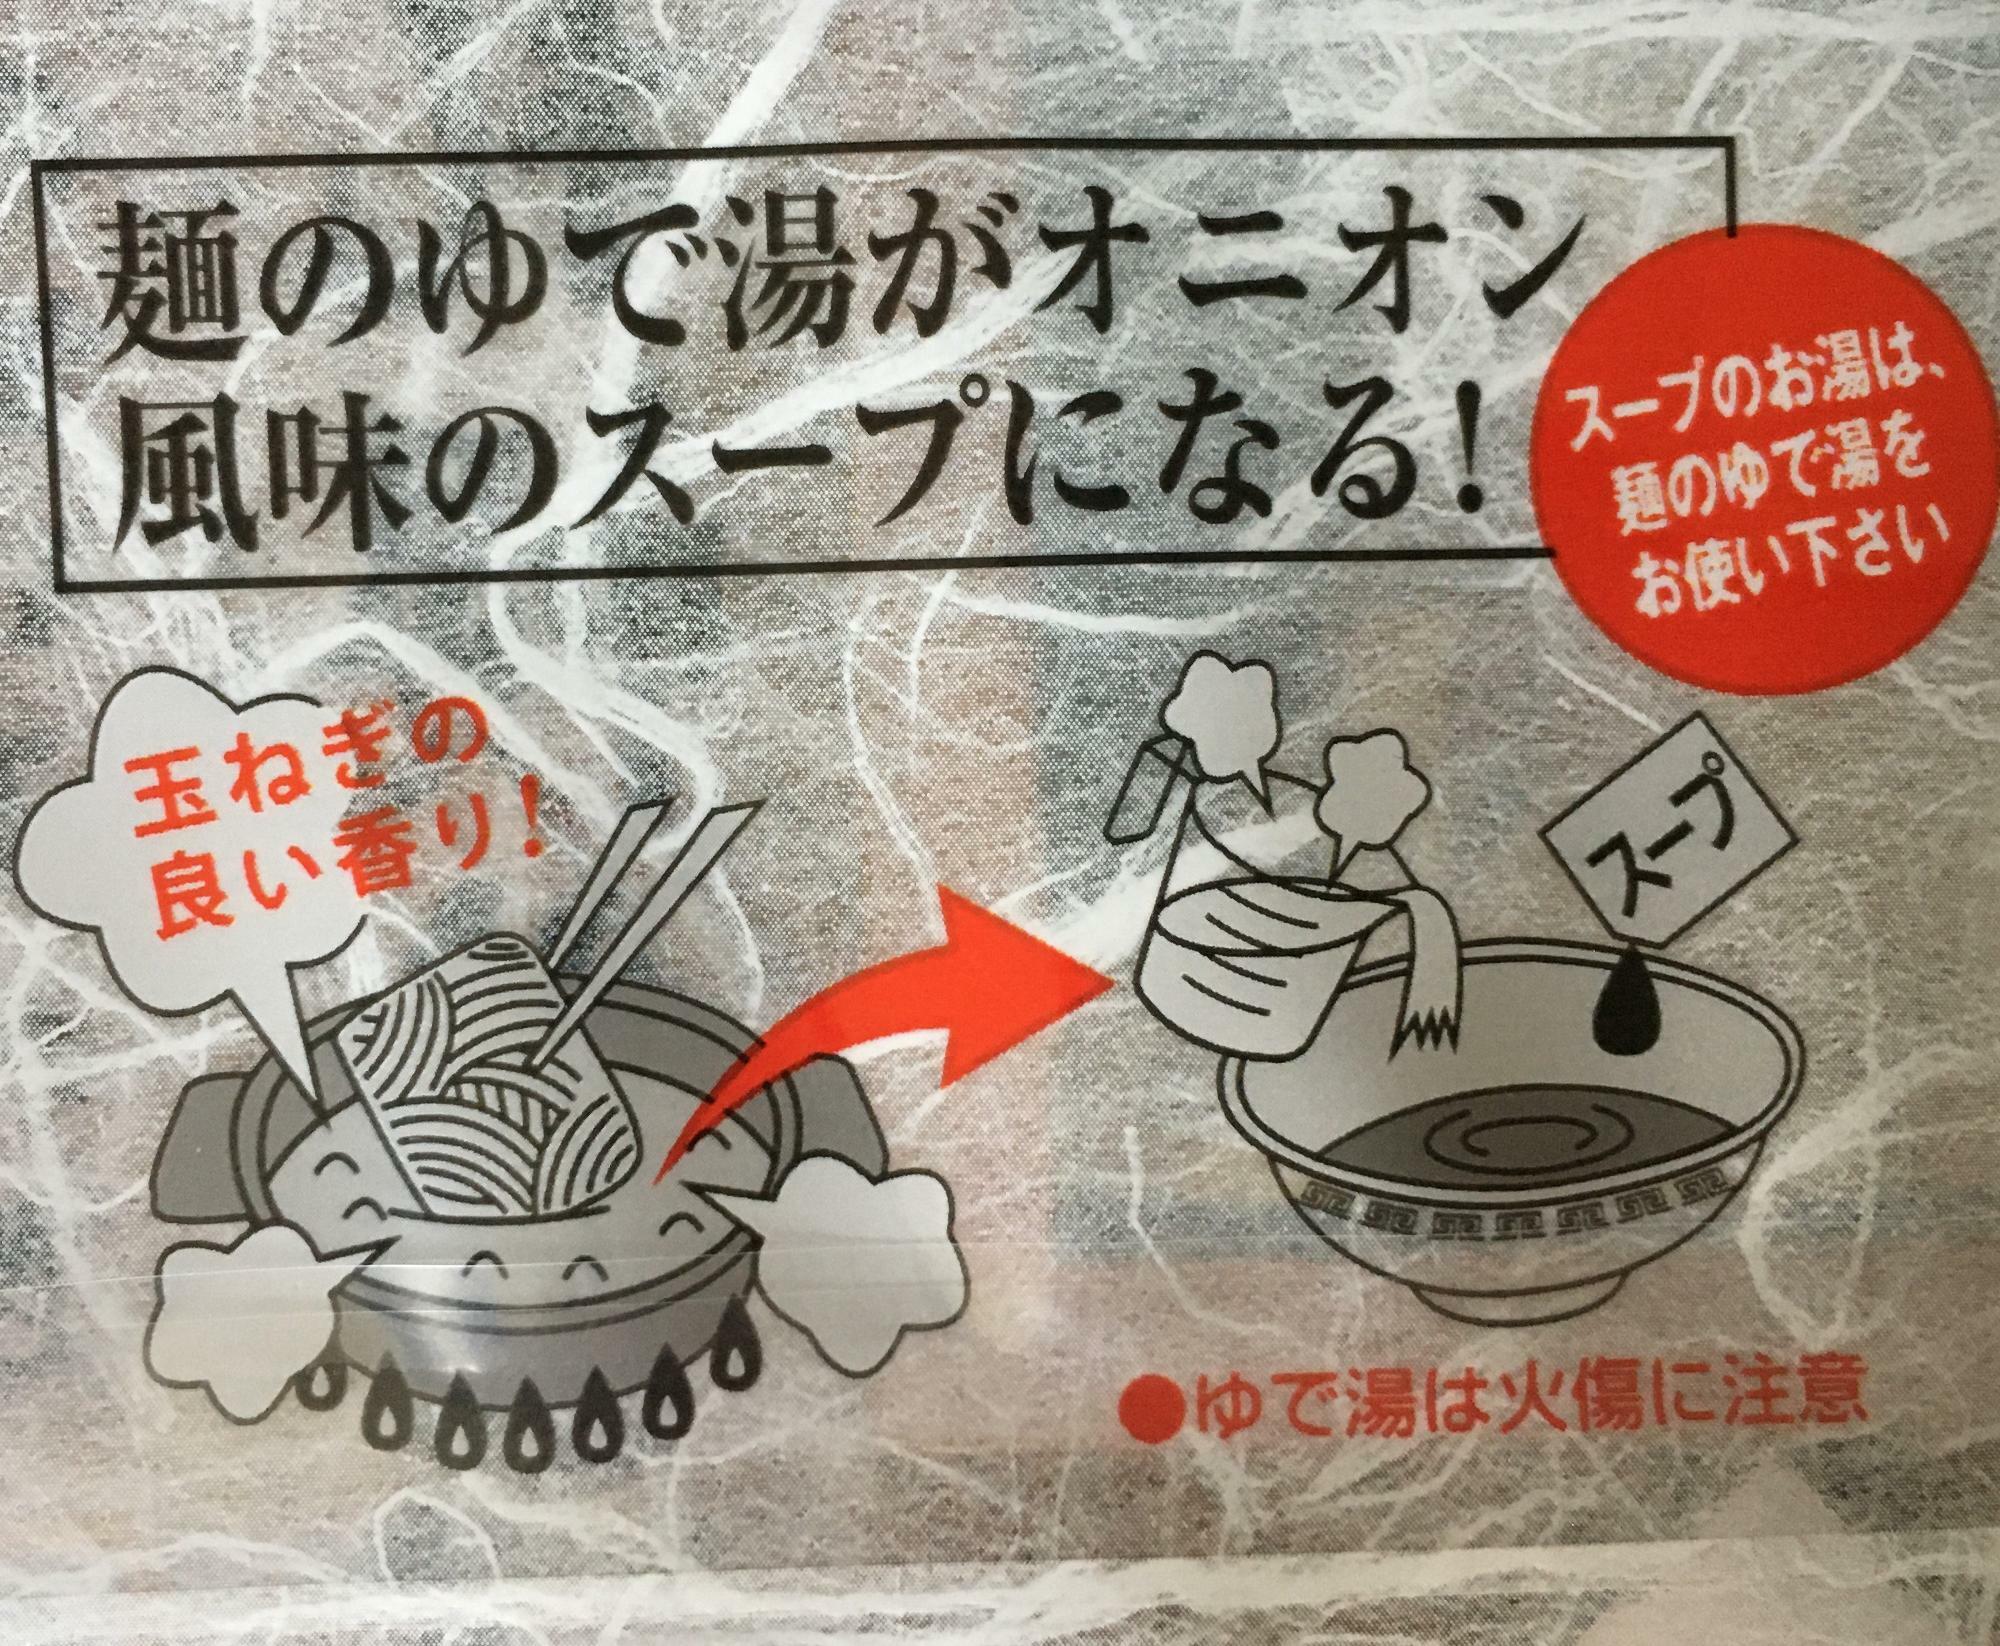 袋の裏のラーメンの作り方に、「ゆで汁を使ってー」と書かれていますね